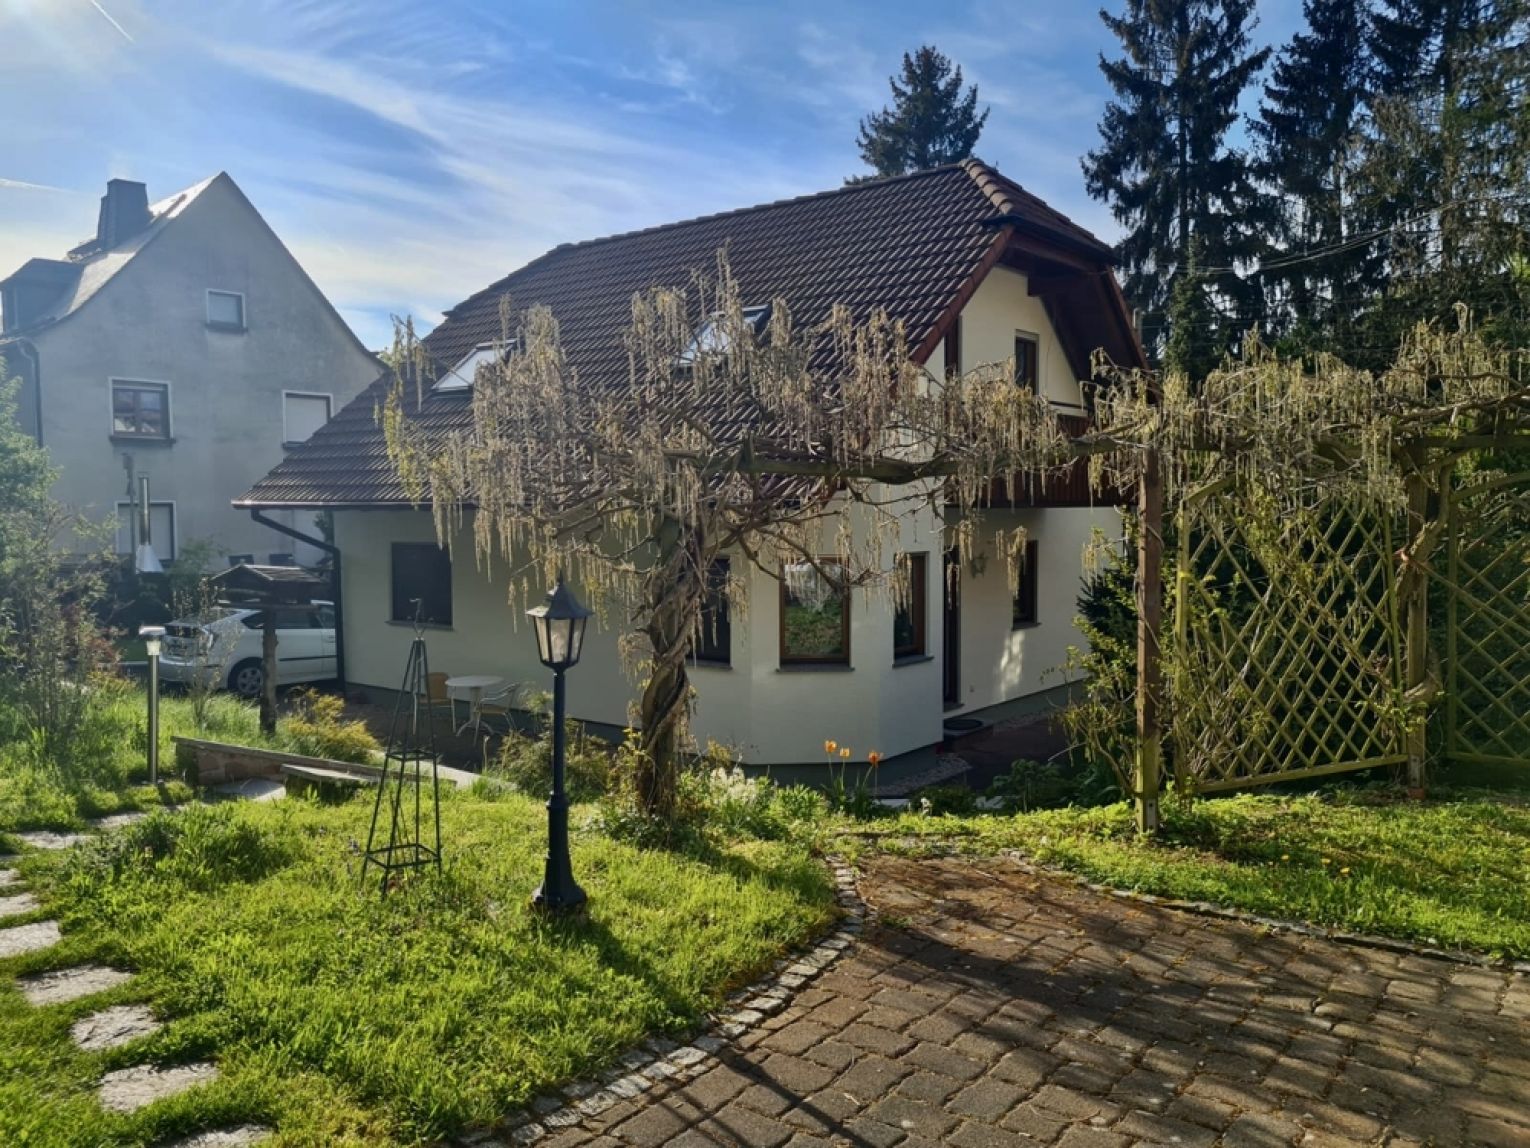 Einfamilienhaus • Lichtenau • 5 Zimmer • Balkon • 2 Terrassen • Garten • Brunnen